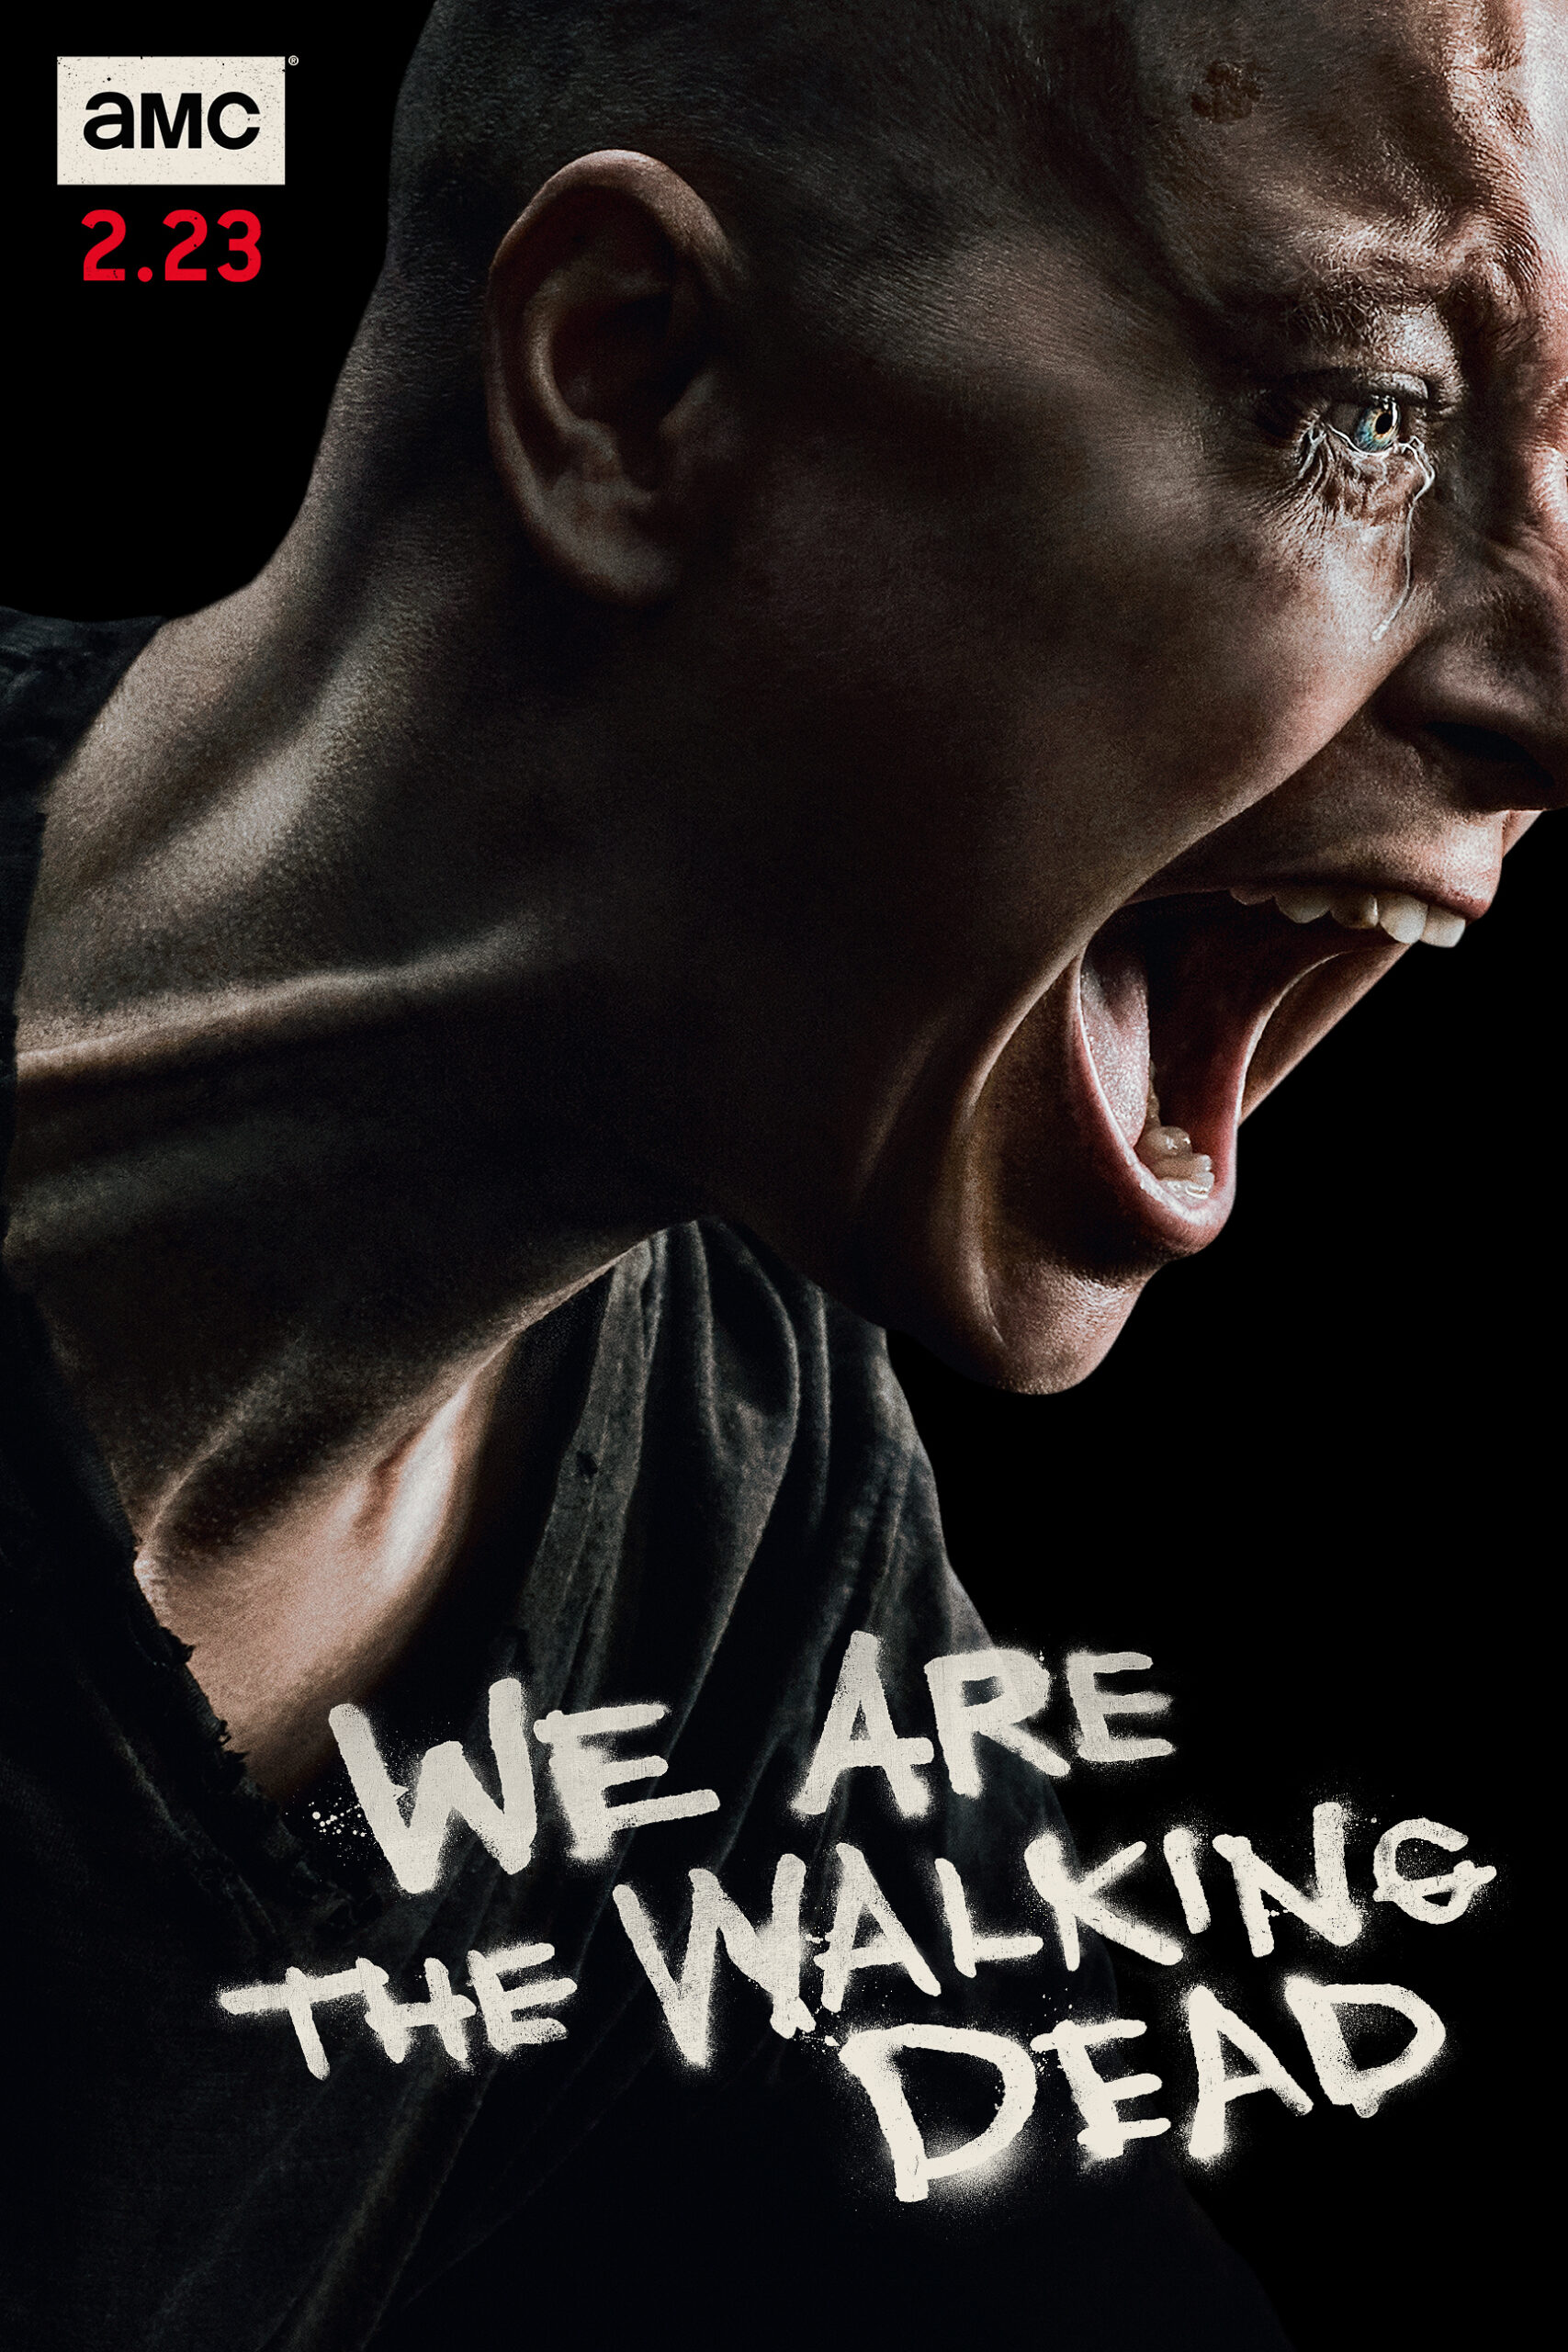 ดูหนังออนไลน์ฟรี The Walking Dead Season 4 EP1 เดอะวอล์กกิงเดด ปี4 ตอนที่1 [[Sub Thai]]